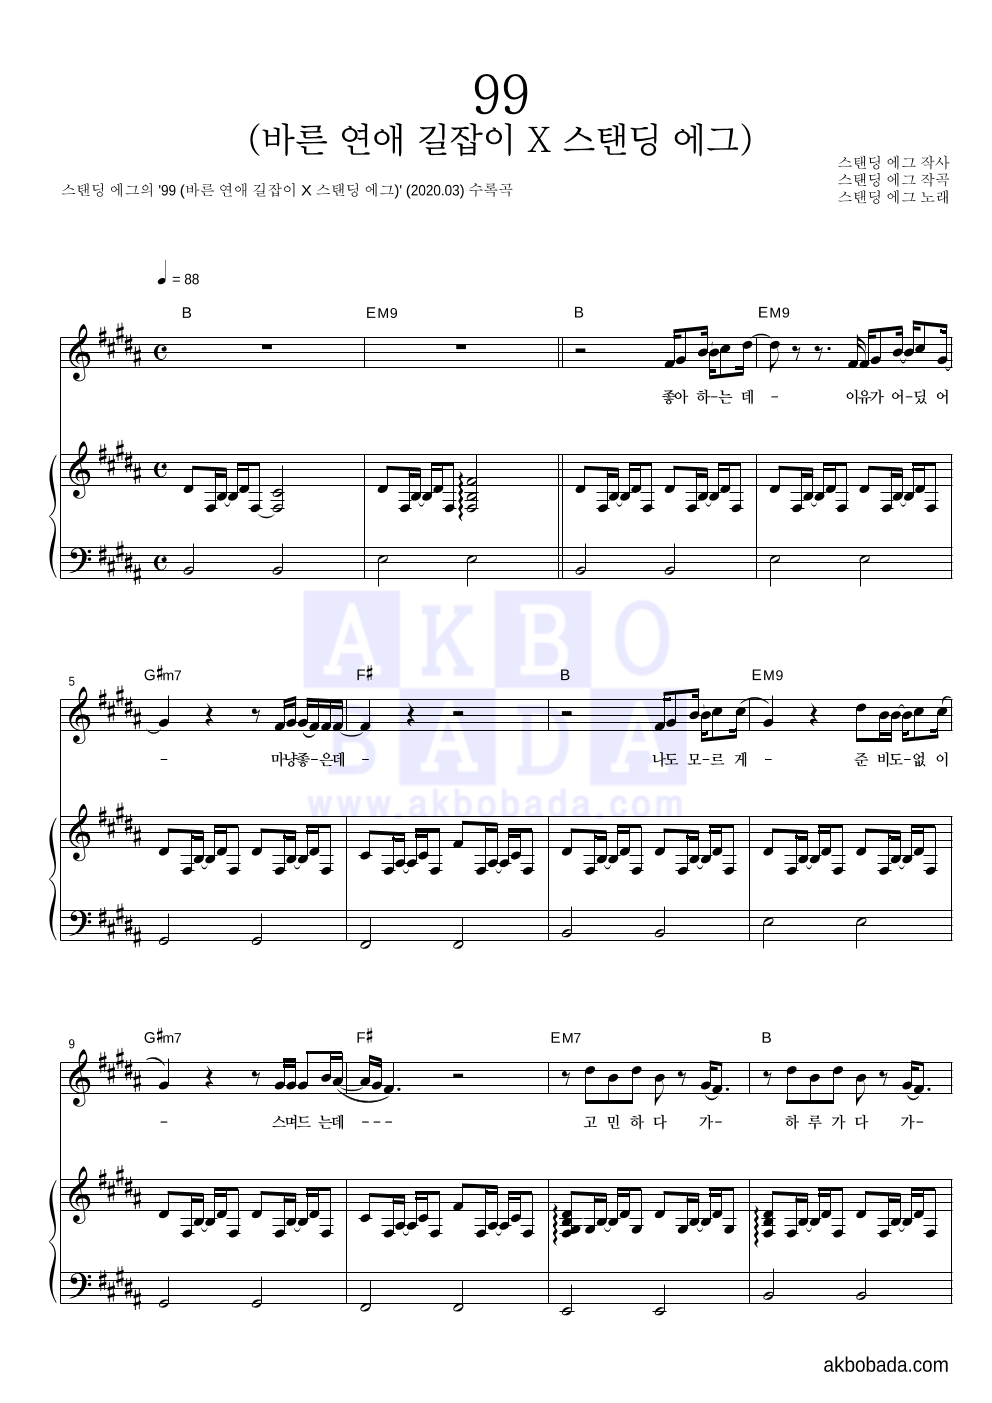 스탠딩 에그 - 99 (바른 연애 길잡이 X 스탠딩 에그) 피아노 3단 악보 